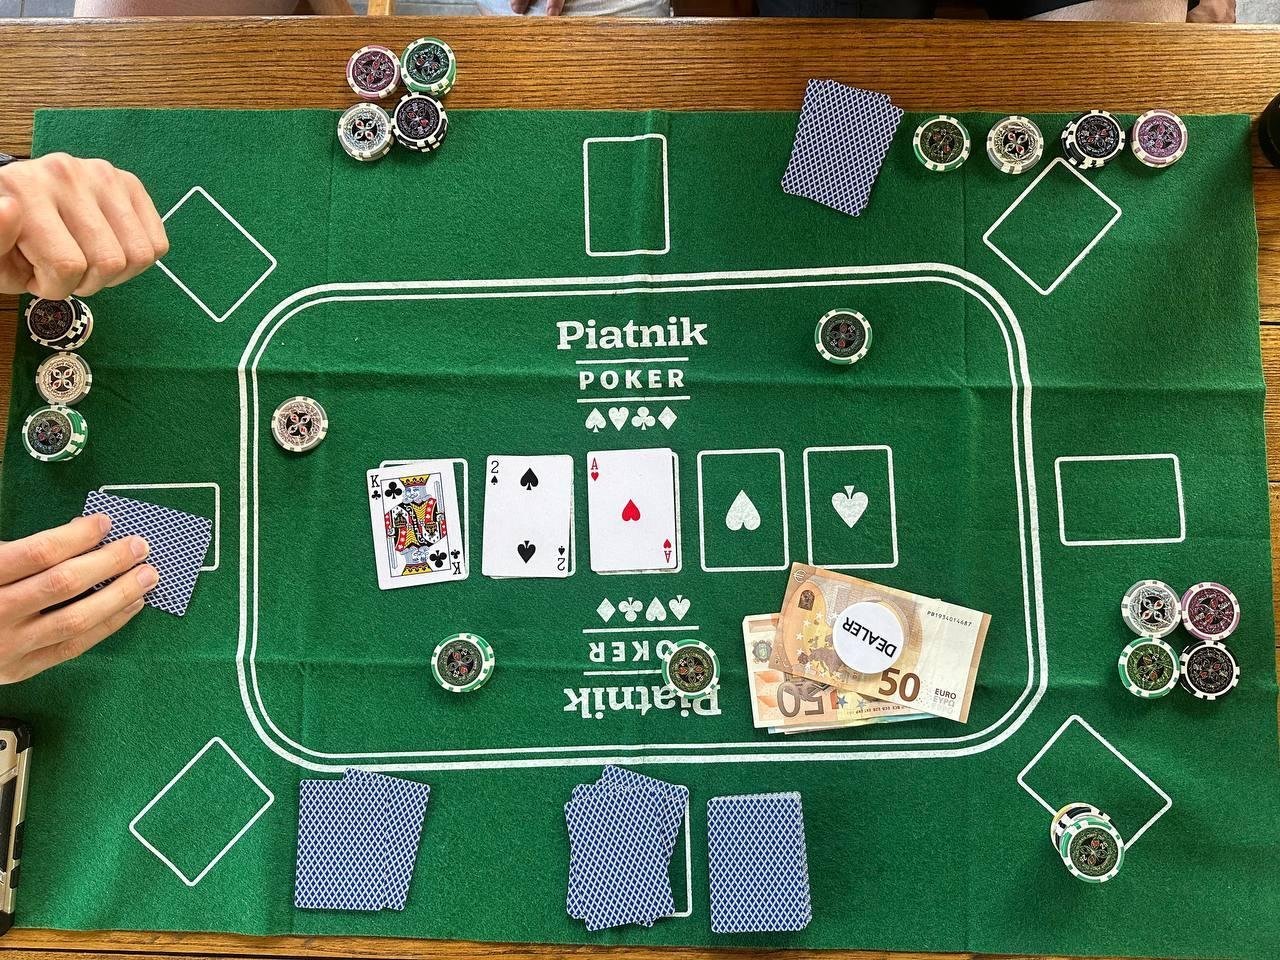 Покерная станция от @Klalofu, @kutovoys, @pihta и @afakate. По-моему, самый большой выигрыш у кого-то был 300 евро. И нет, расслабьтесь, в Сербии азартные игры легальны. Наши копы это подтвердили :)